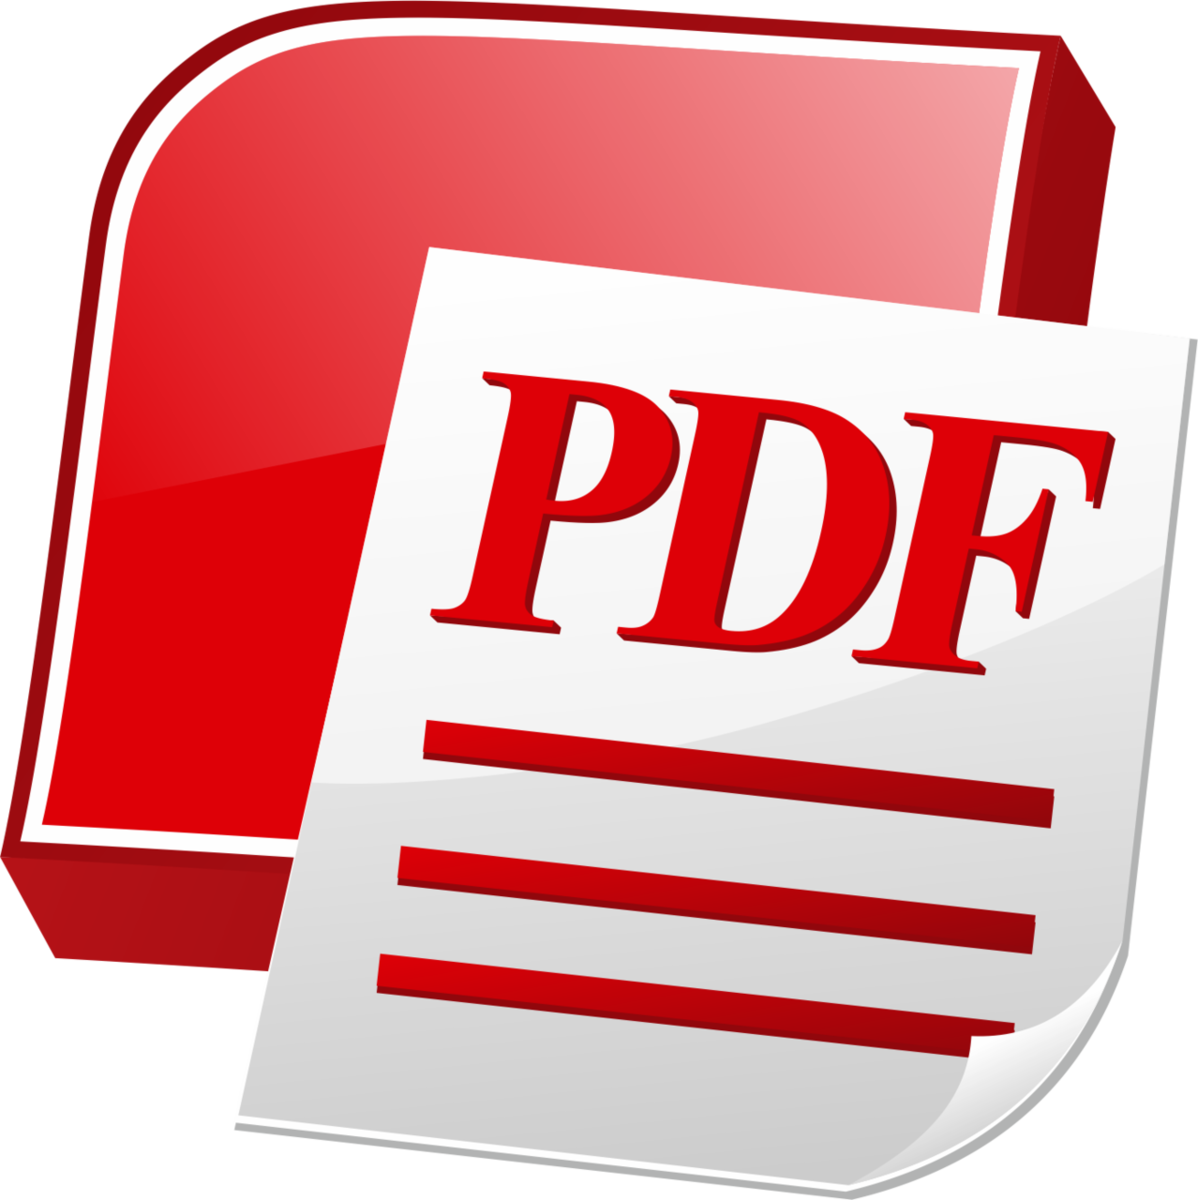 Pdf icon. Значок pdf. Пдф файл. Иконка pdf файла. Иконка документа pdf.